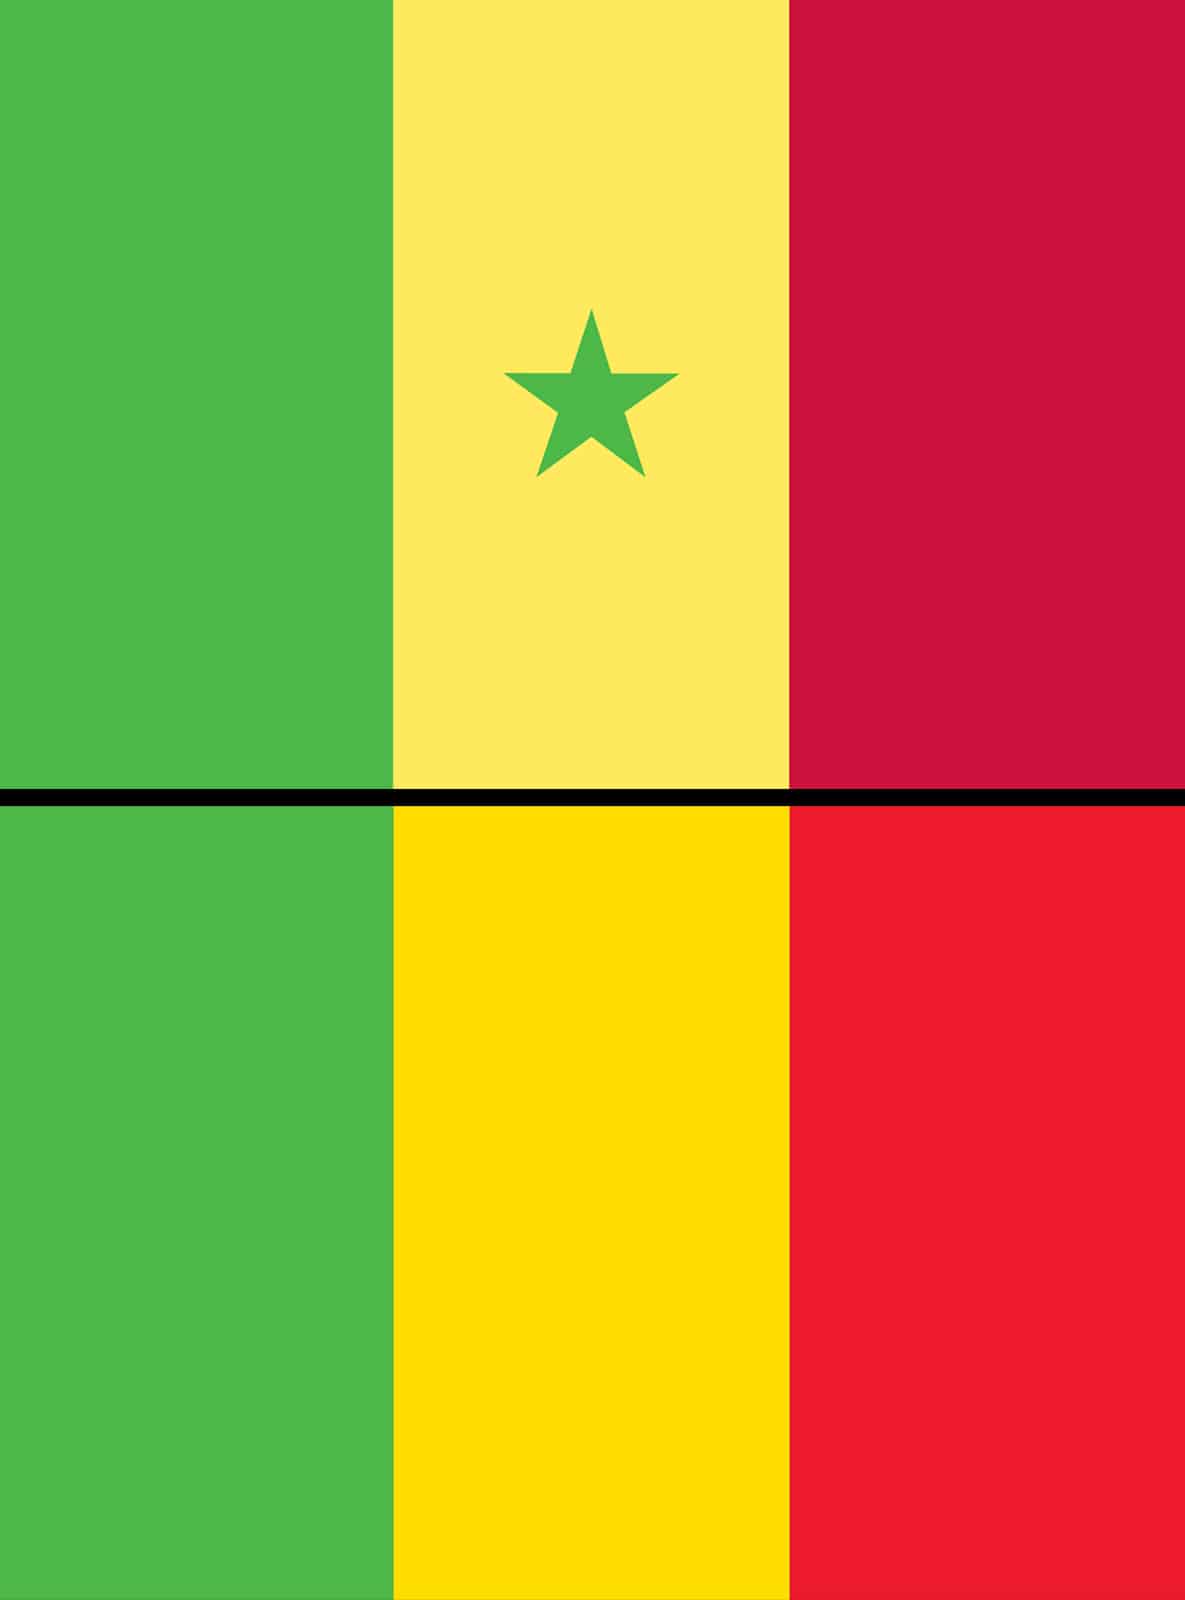 السنغال ومالي من أعلام الدول المتشابهة